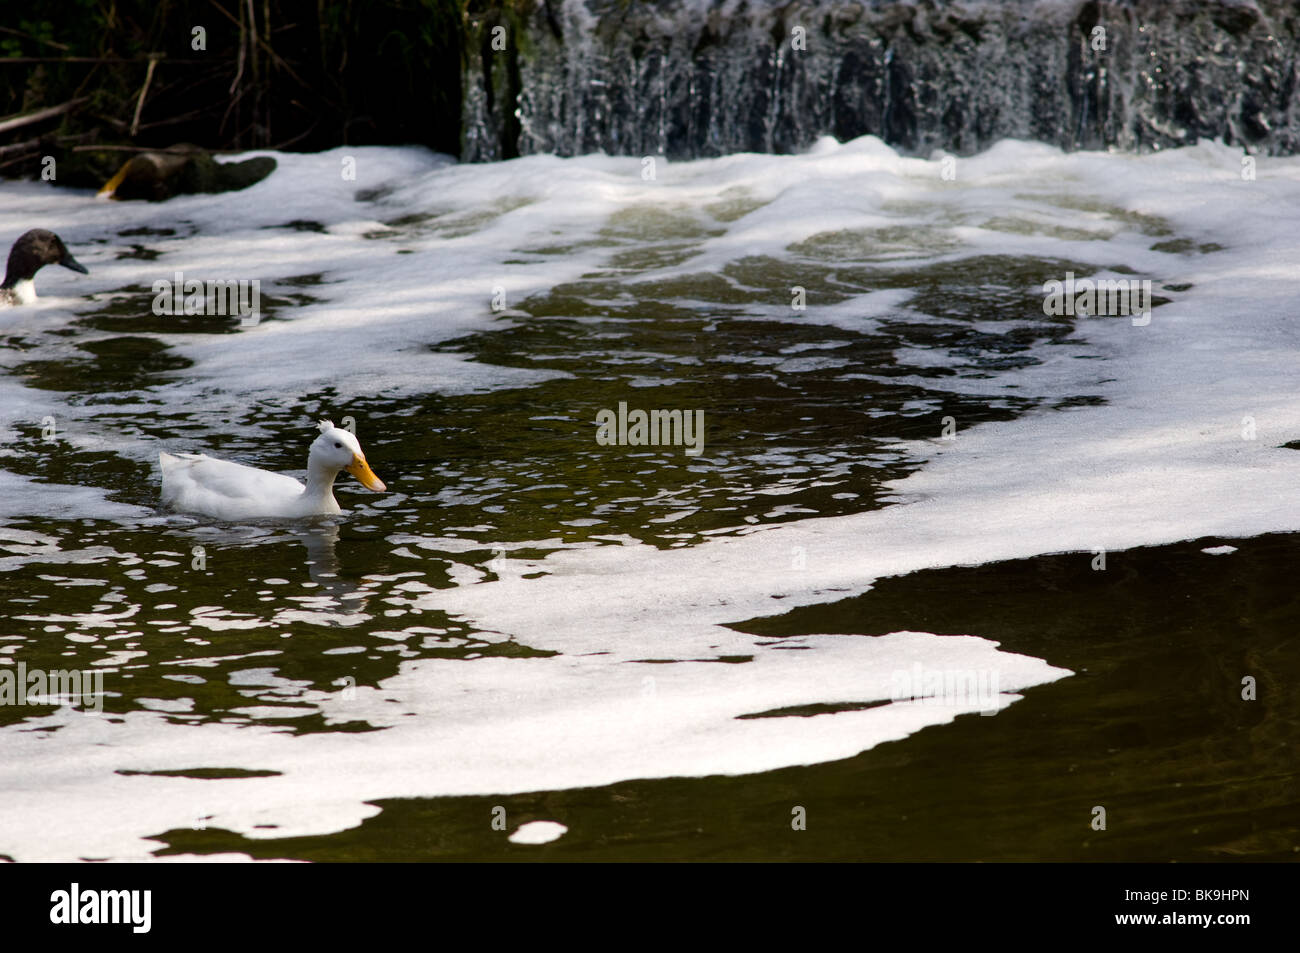 Canard blanc nageant à travers une rivière polluée Banque D'Images